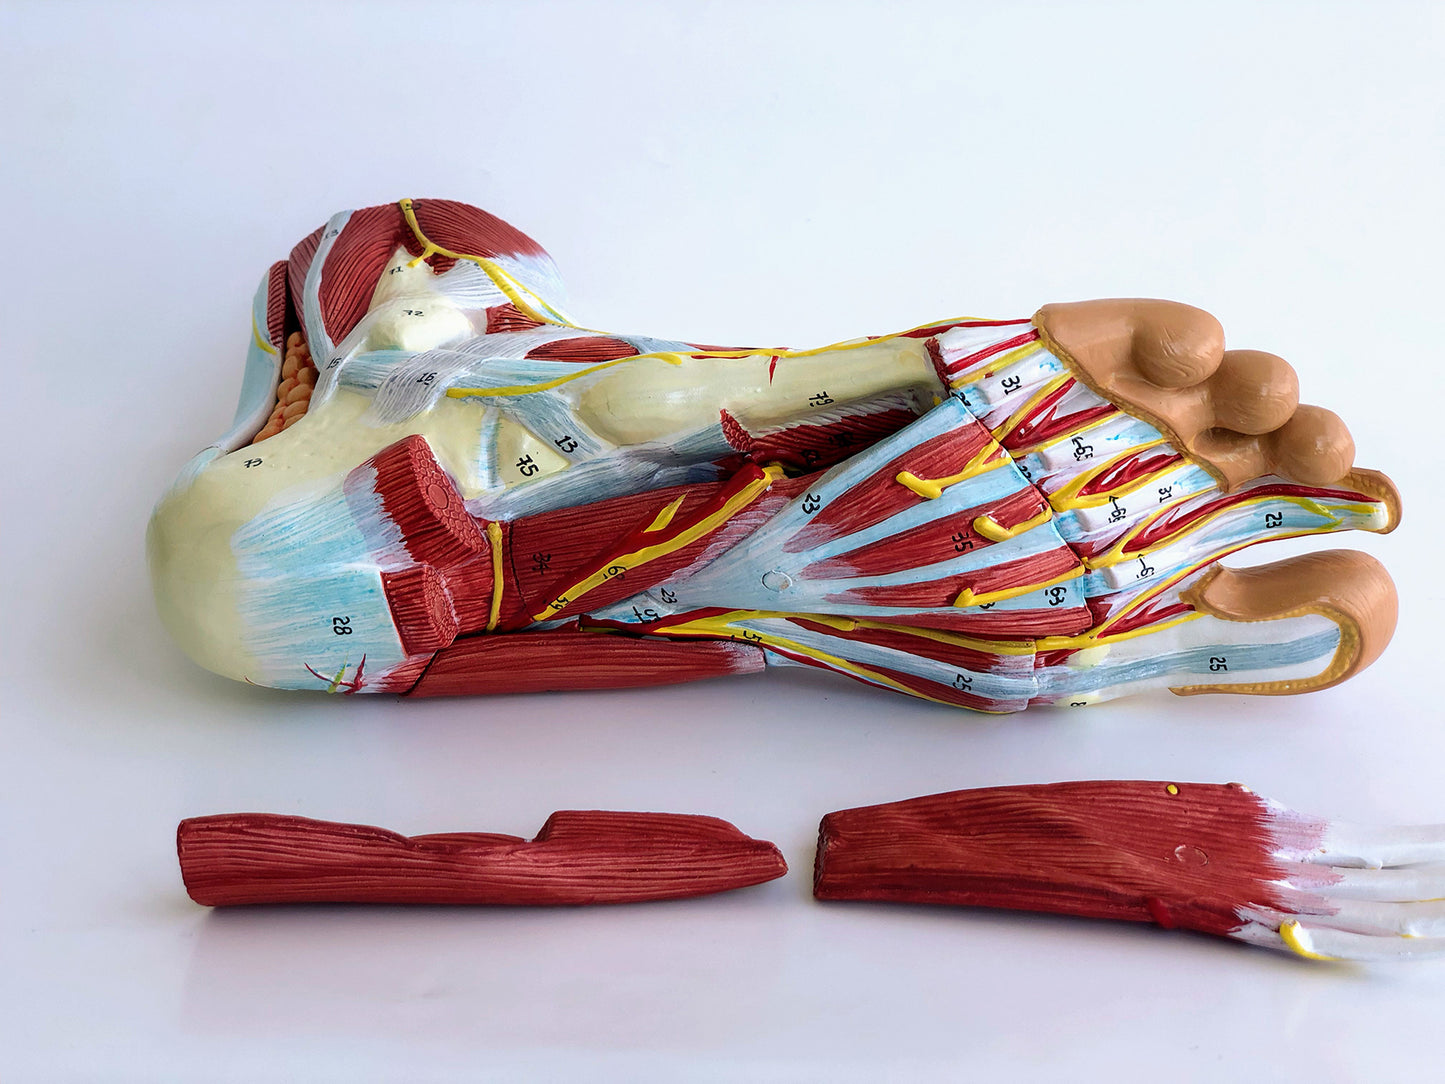 Komplett fotmodell med ligament, muskler, kärl och nerver - kan delas upp i 9 delar